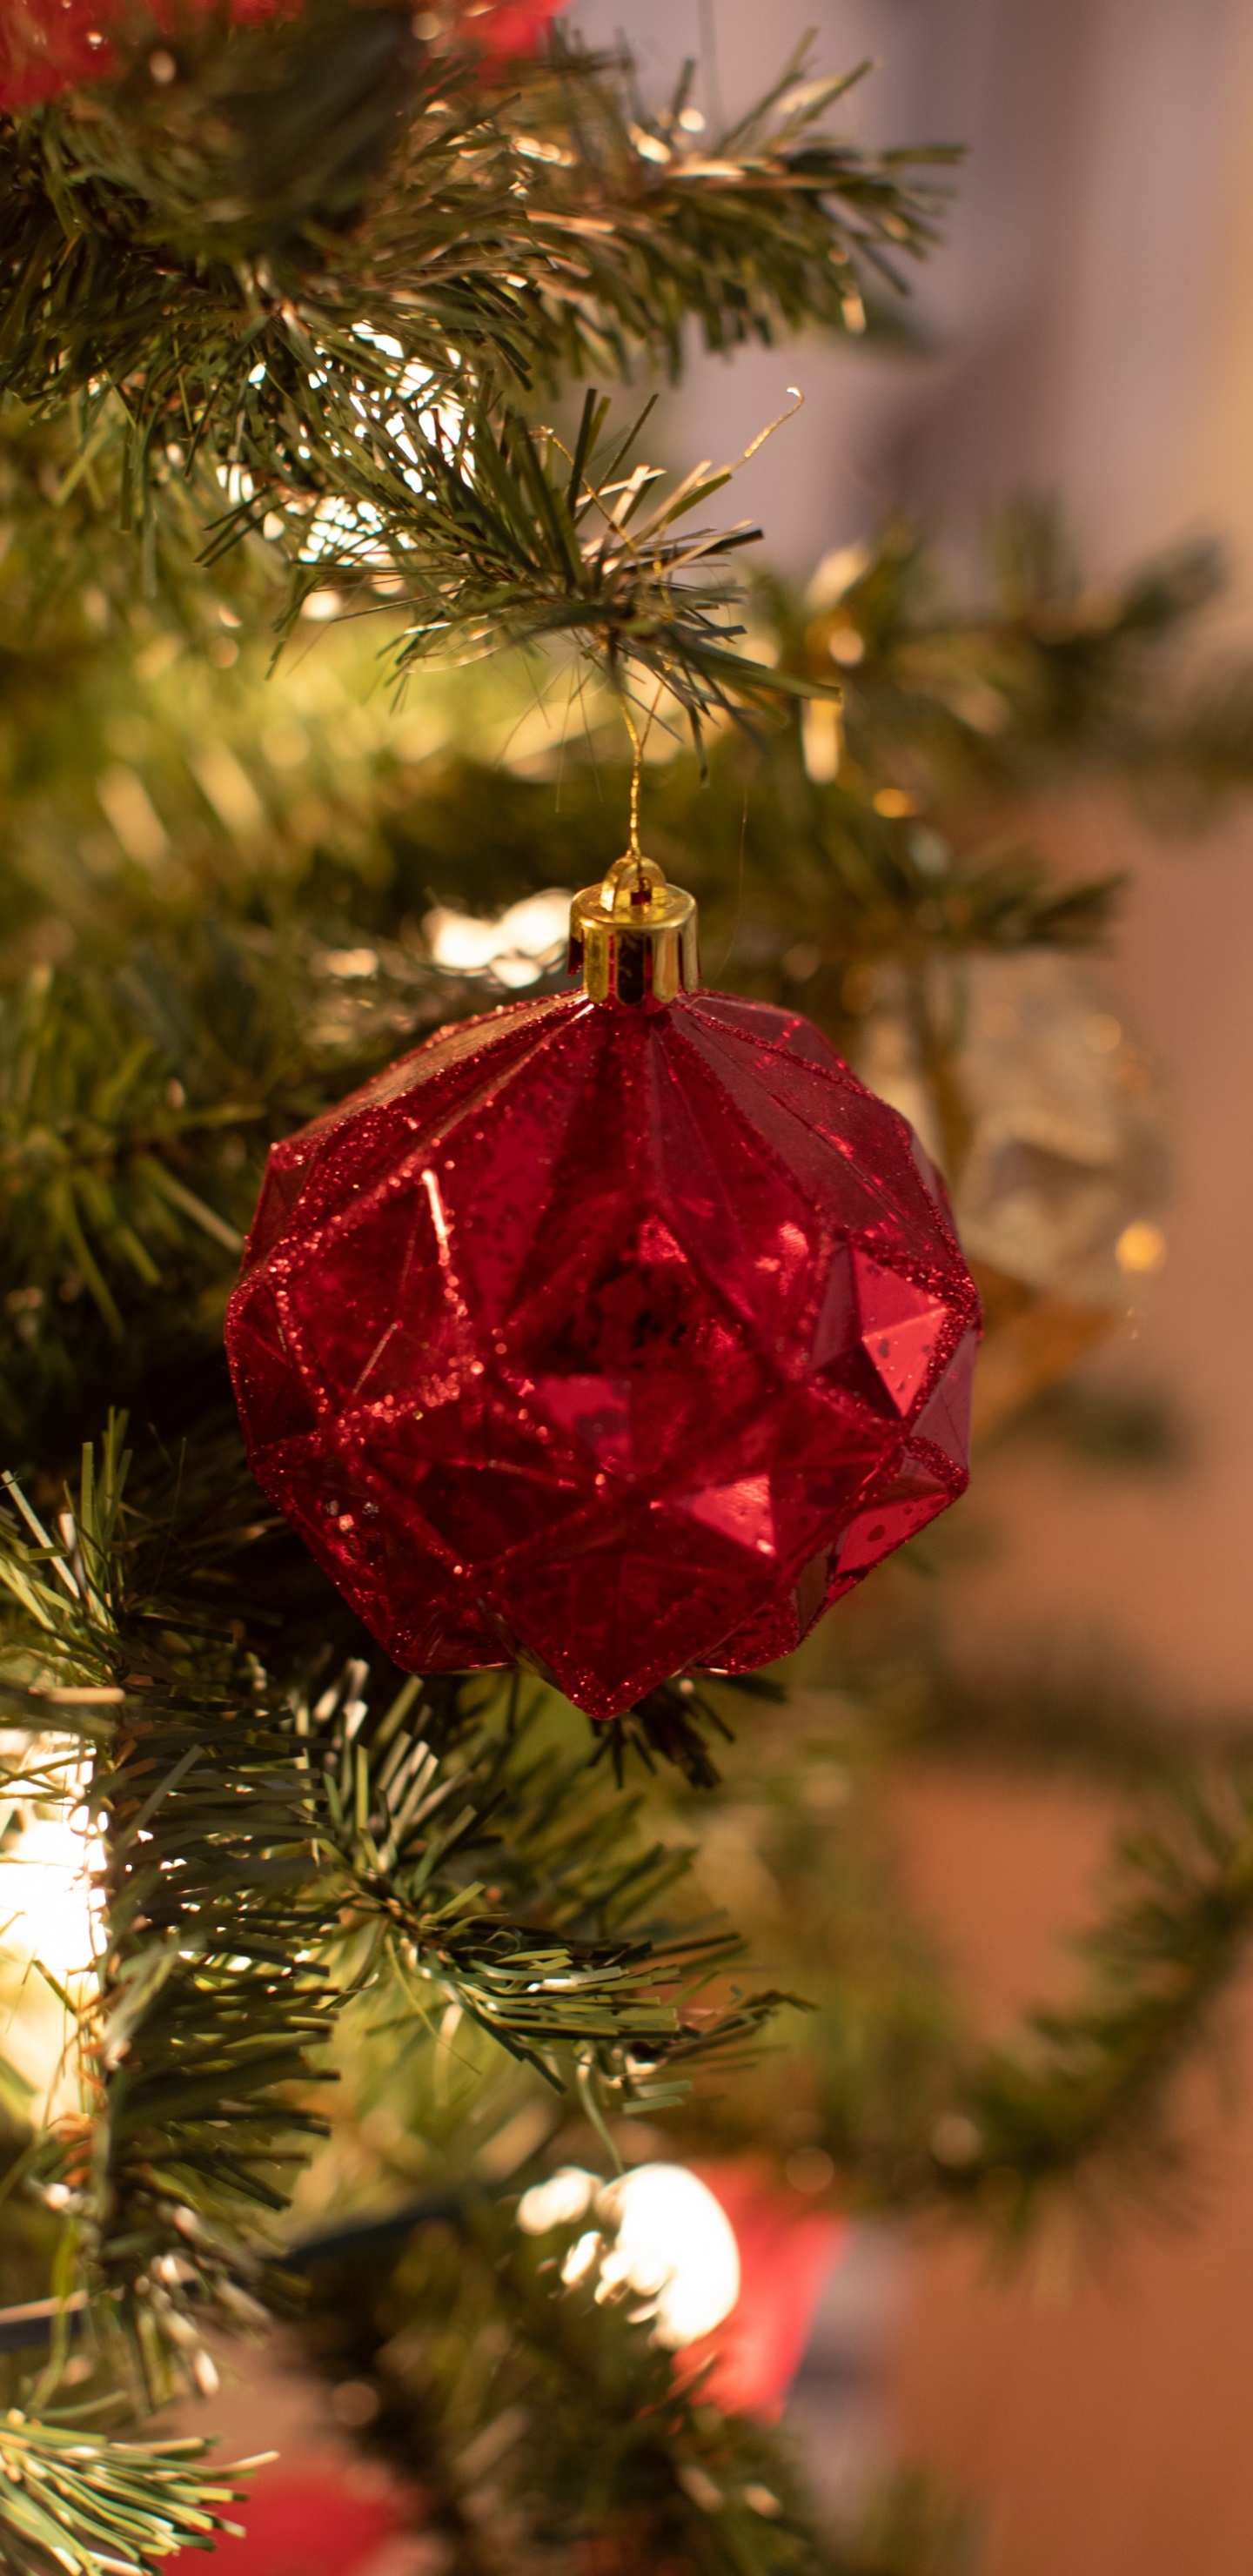 Weihnachten, Weihnachtsbaum, Christmas Ornament, Neujahr, Weihnachtsdekoration. Wallpaper in 1440x2960 Resolution